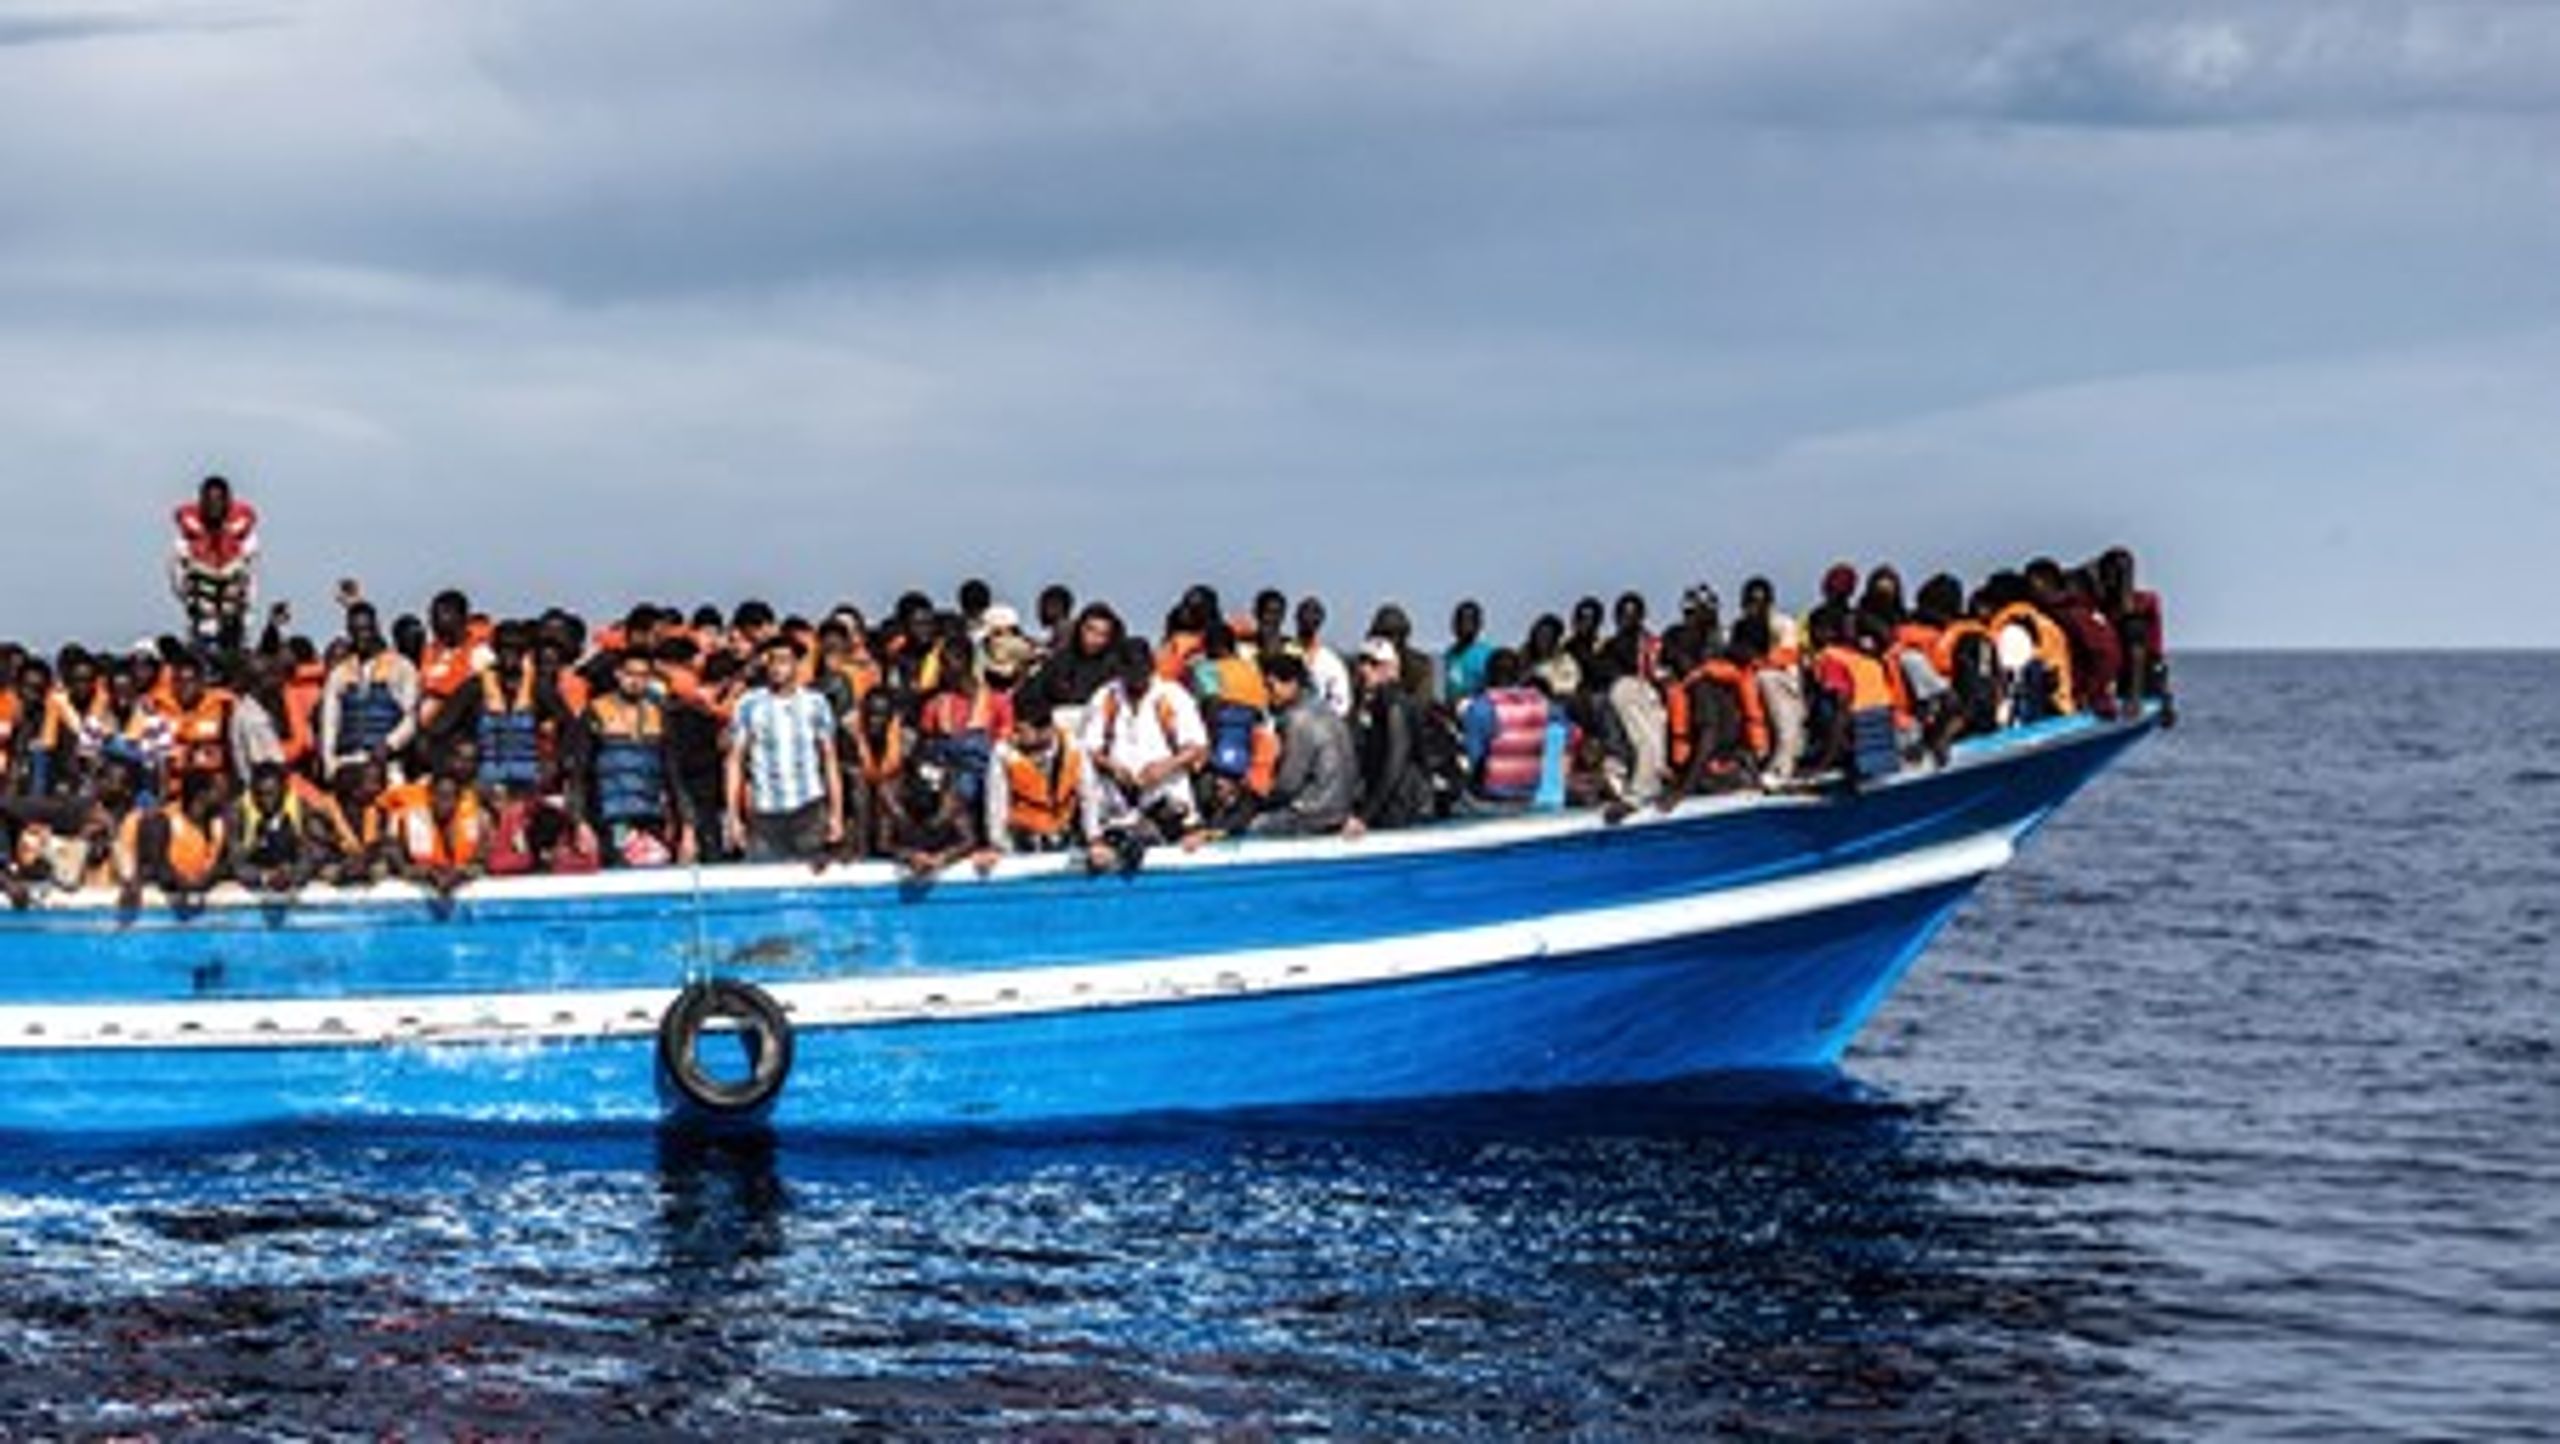 Flygtninge og migranter er røget i top på den politiske dagsorden. Men&nbsp;selvom de barske fotos fra Middelhavet påvirkede folkestemningen,&nbsp;ønsker de færreste danskere, at vi tager imod flere asylansøgere end i dag.&nbsp;&nbsp;<br>